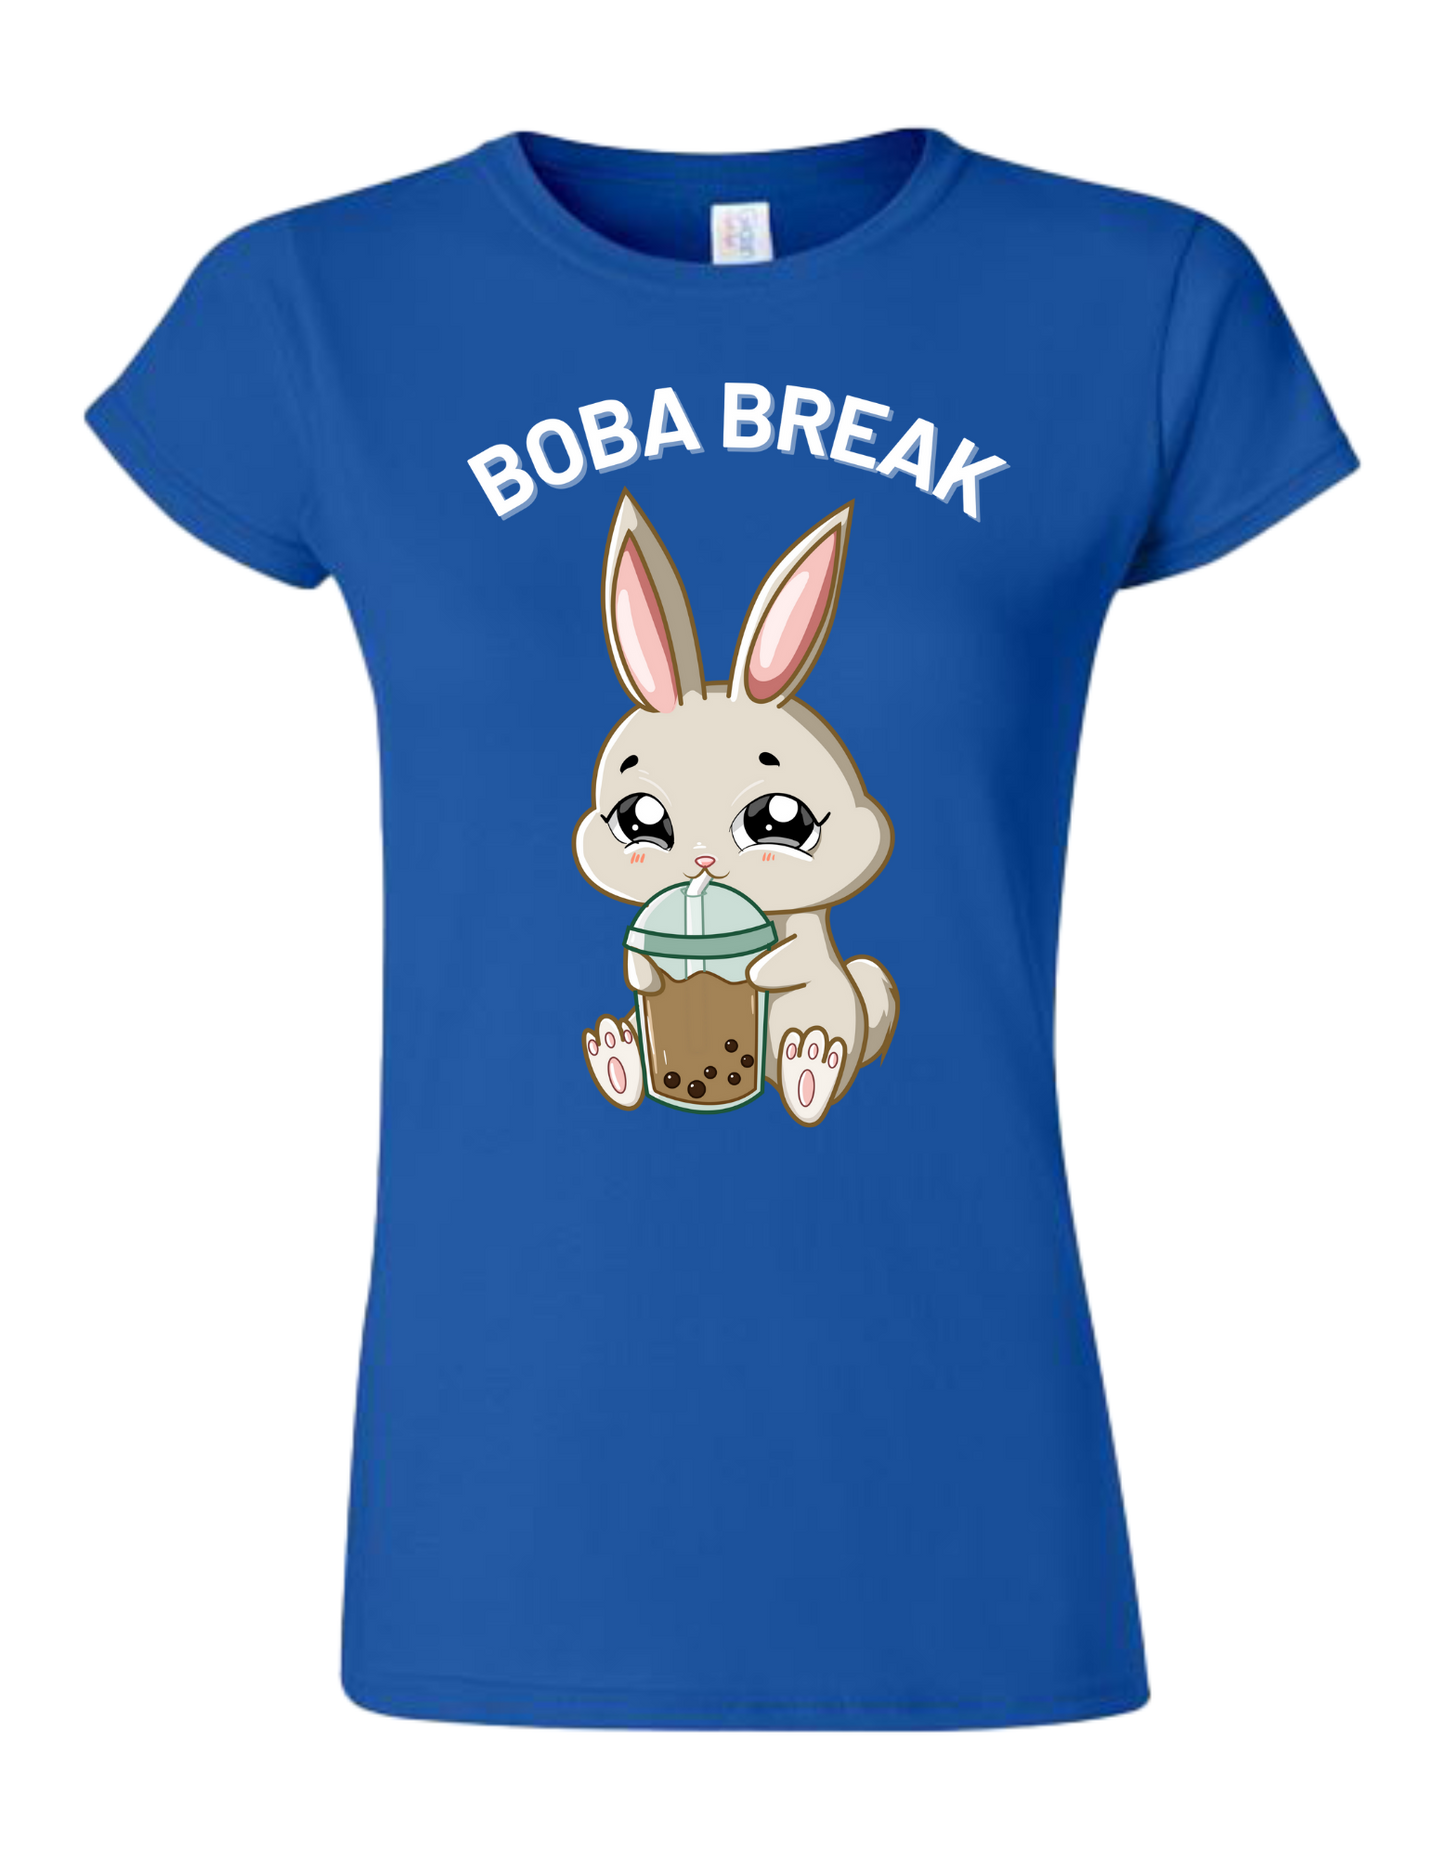 Boba Break -